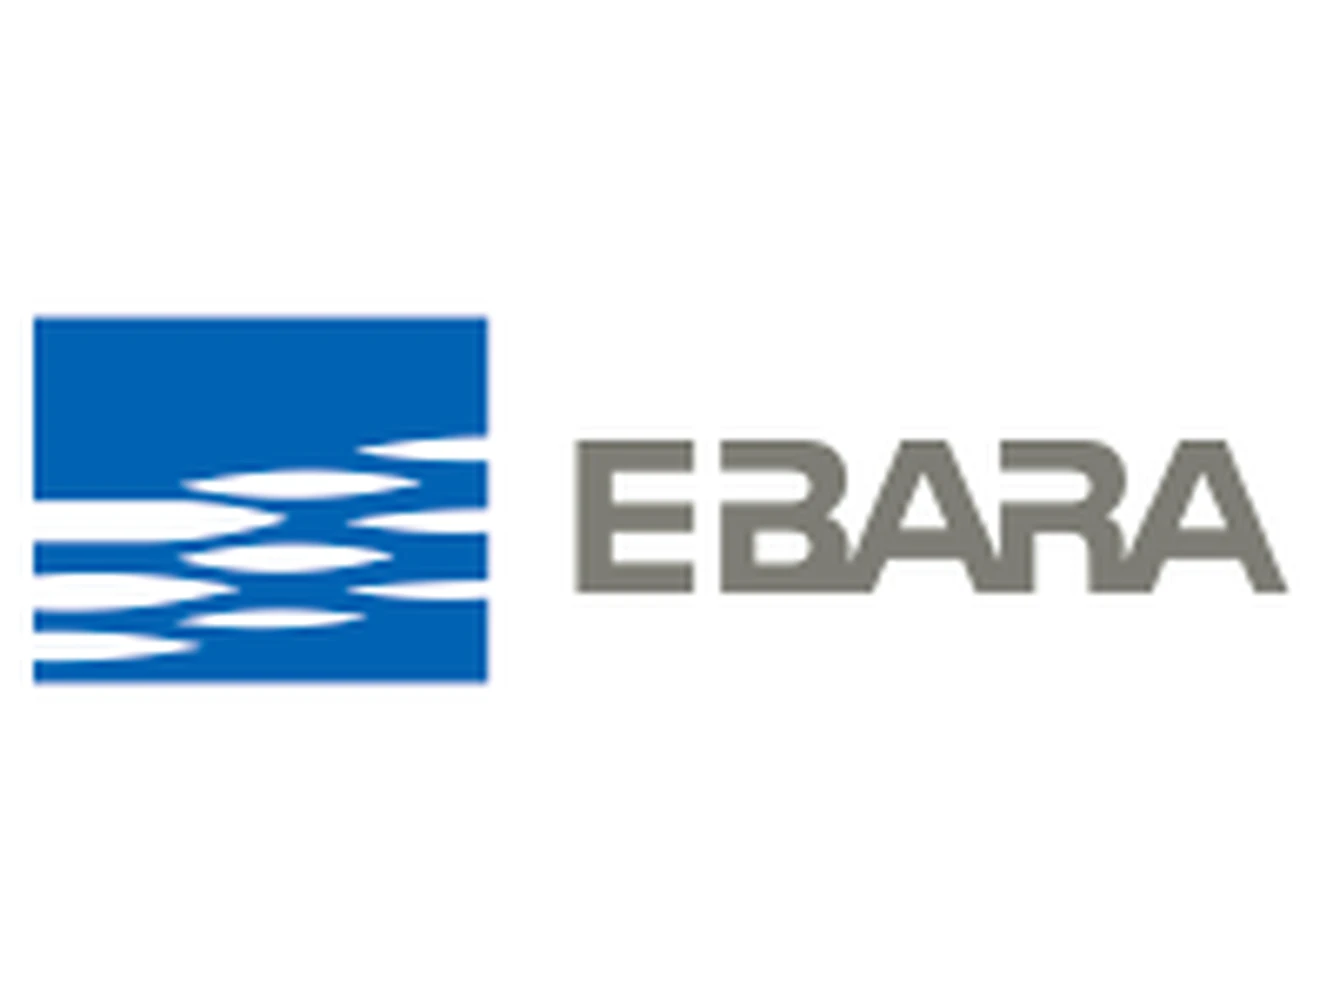 EBara logo